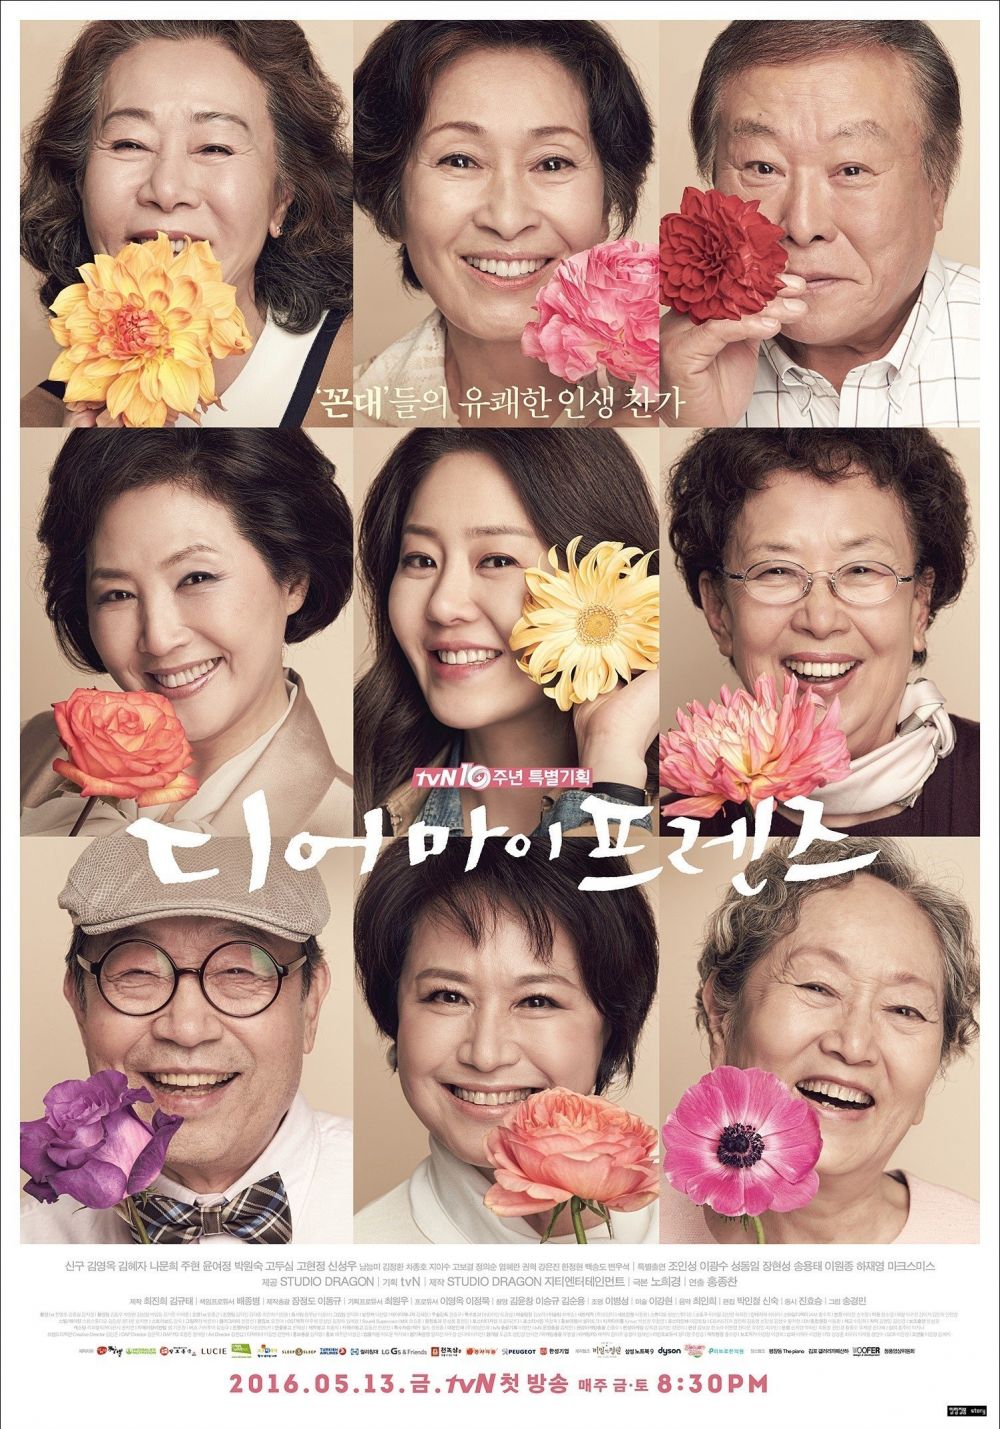 5 Drama Korea kisahkan kehidupan orang tua, penuh pesan moral